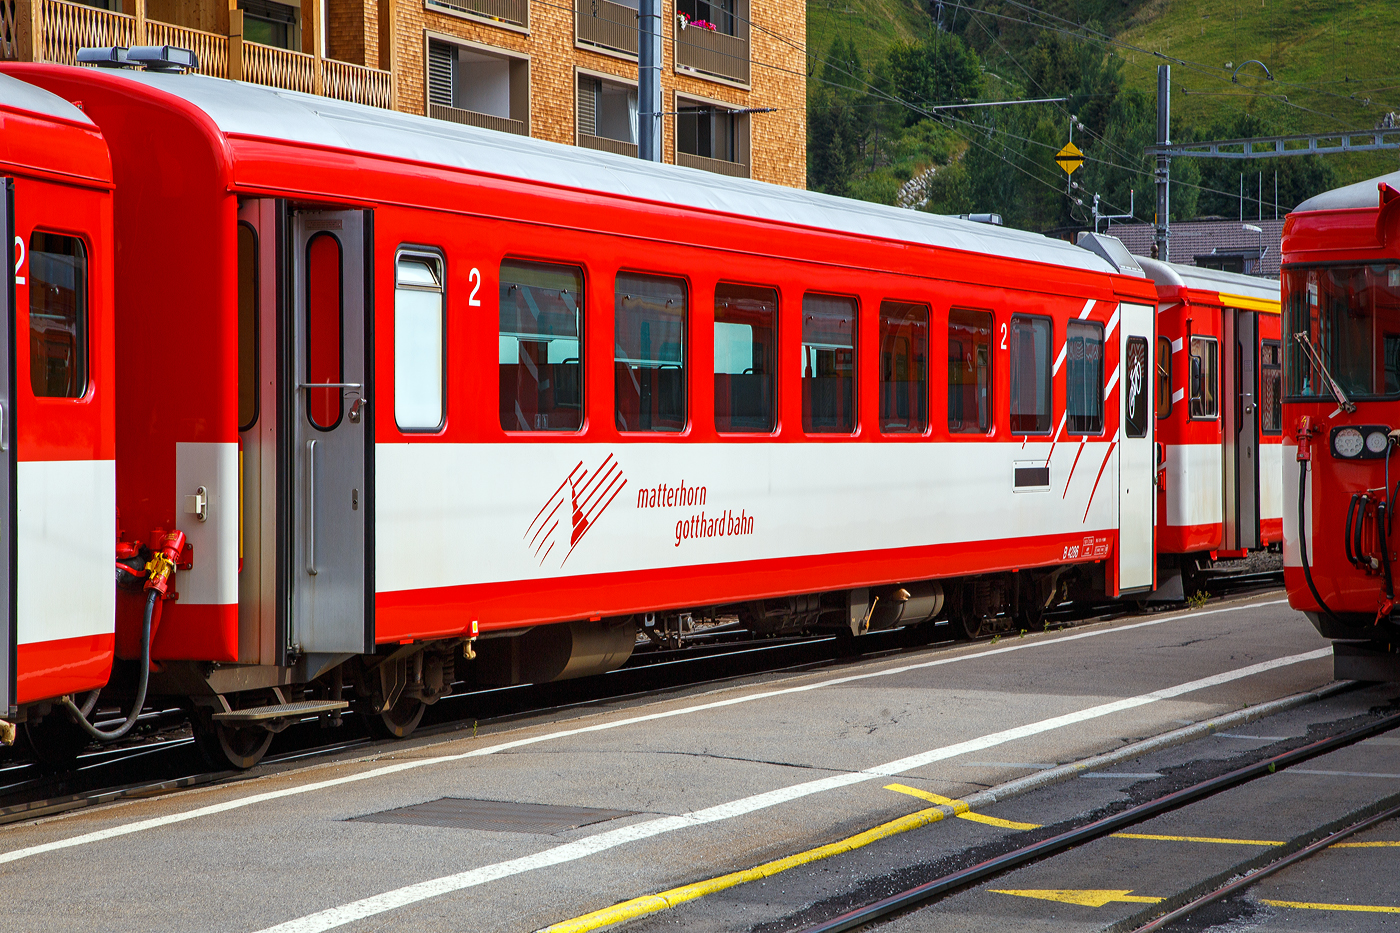 Der 2. Klasse Reisezugwagen MGB B 4286 (ex FO - Furka-Oberalp-Bahn) am 07 September 2021 im Bahnhof Andermatt im Zugverband.

Der Wagen wurde 1980 von SIG (Schweizerische Industrie-Gesellschaft) in Neuhausen am Rheinfall gebaut. Kurz vor dem Ausstieg aus der Fertigung ganzer Eisenbahnwagen (SIG konzentrierte sich danach auf Drehgestelle) wurde auch hier noch ein Einheitswagen II entwickelt. Dieser nahm die Spezifikationen des BAV auf und hnelte deshalb sehr stark dem EW II von FFA. WC und Plattform waren nun ebenfalls innen, die Tren ganz am Wagenende. Von den insgesamt gebauten 39 Wagen (verkrzte EW II) gingen deren 26 an die FO, die im Hinblick auf die Erffnung des Furkatunnels und den ganzjhrigen Betrieb den Rollmaterialpark erheblich aufstockte und modernisierte. 

TECHNISCHE DATEN:
Hersteller: SIG 
Serie: B 4273–88 (16 Stck), Baujahr 1980
Spurweite: 1.000 mm
Lnge ber Puffer 17.910 mm
Drehgestelle: SIG-S
Eigengewicht: 15,7 t
Sitzpltze: 48 in der 2. Klasse
Zul. Hchstgeschwindigkeit: 90 km/h
Zugelassen fr Netz der: MGB und RhB
